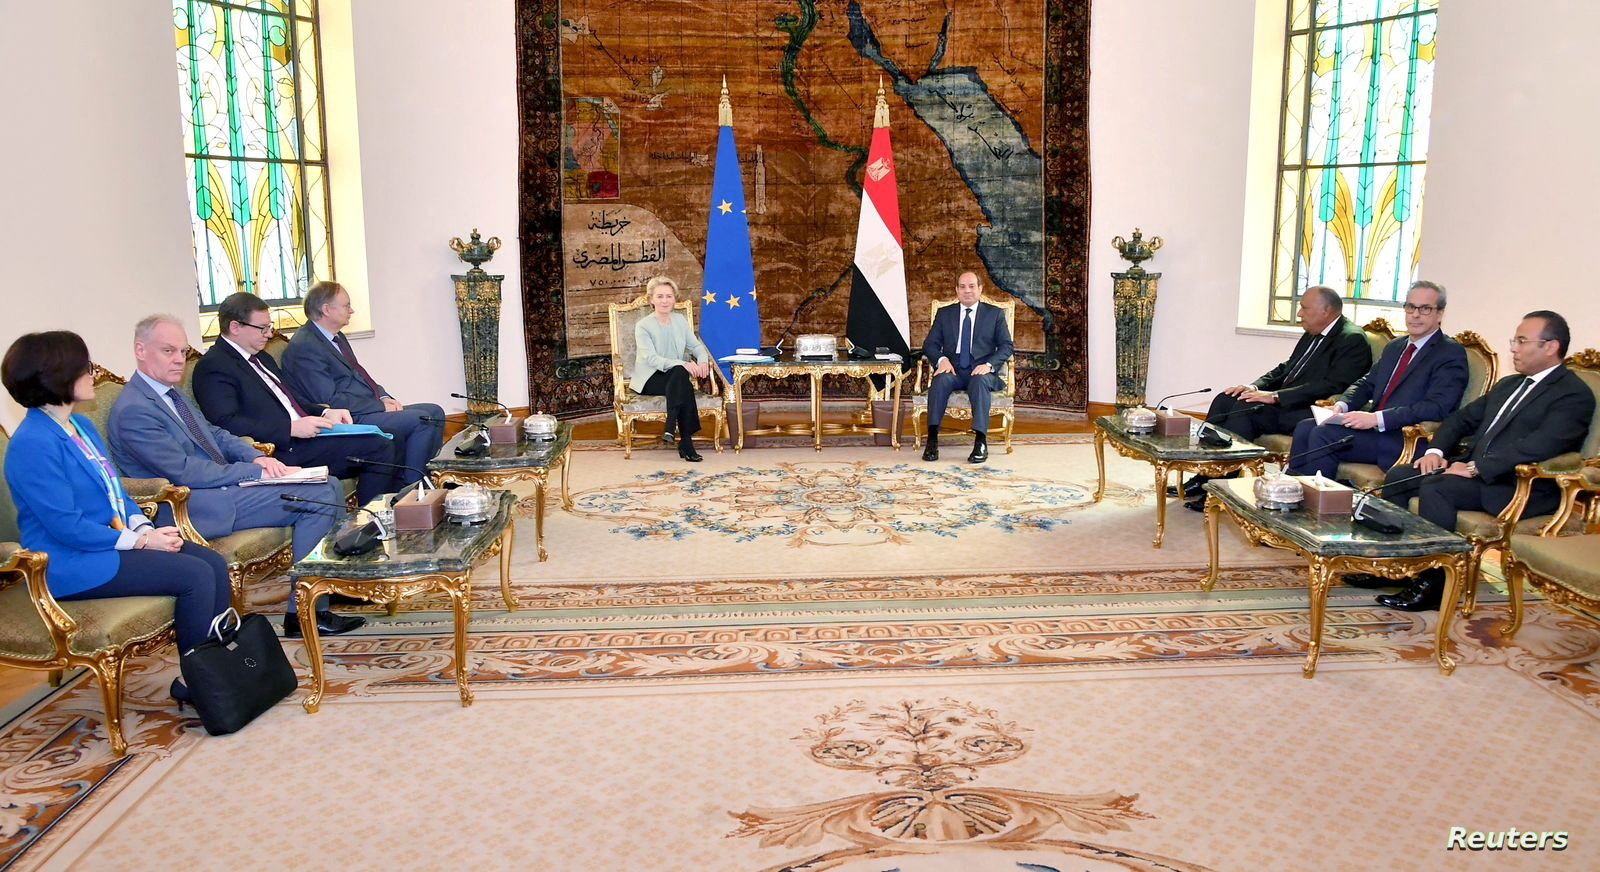 الاتحاد الأوروبي يعلن حزمة تمويل لمصر بقيمة 7.4 مليار يورو